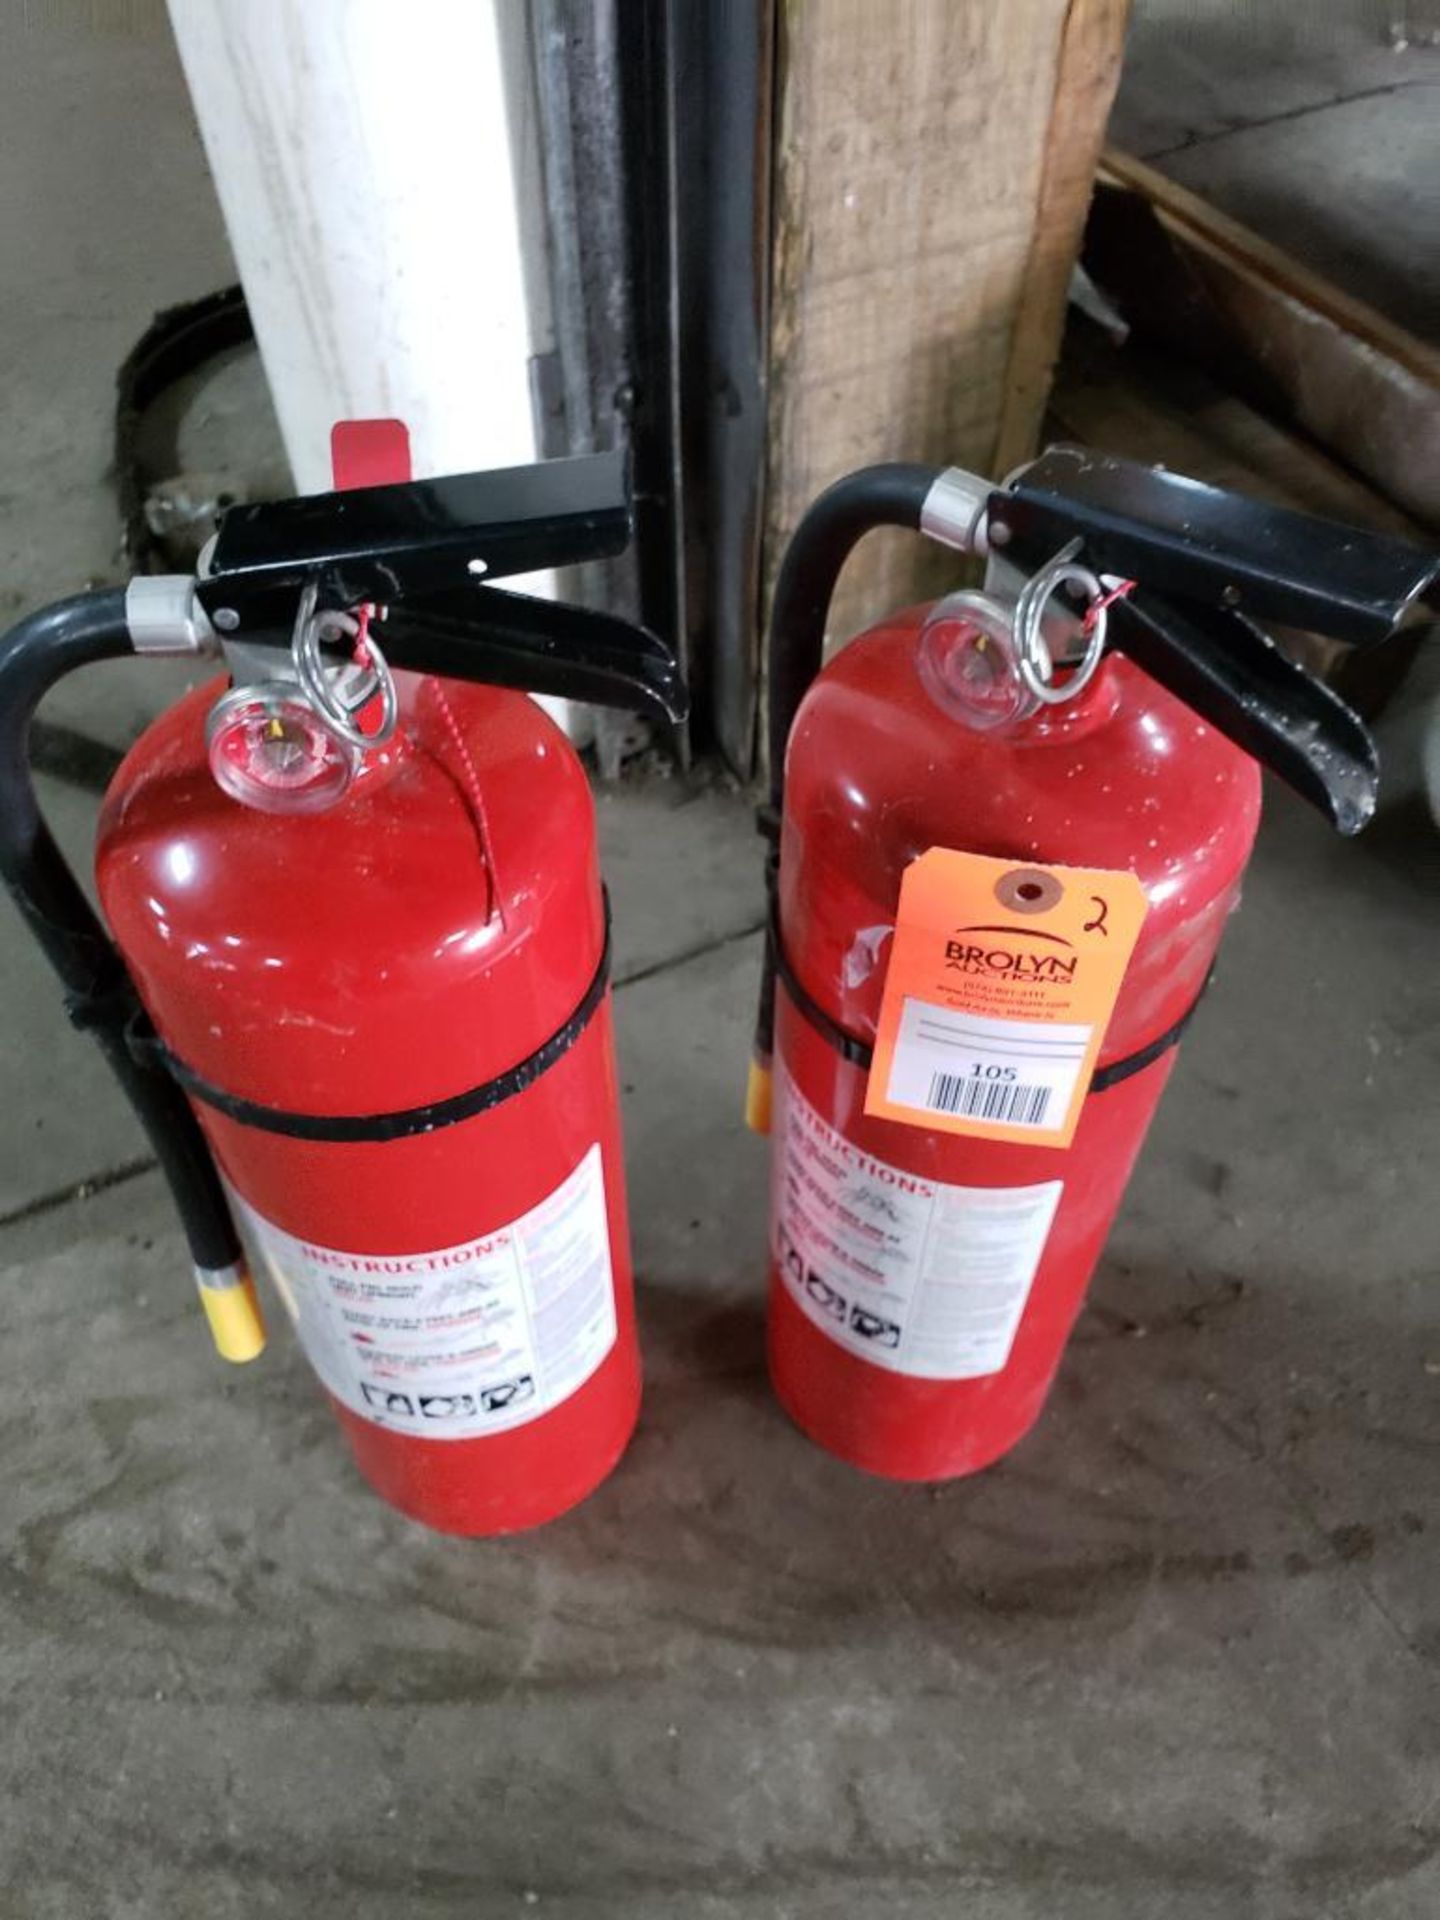 Qty 2 - Fire extinguishers.